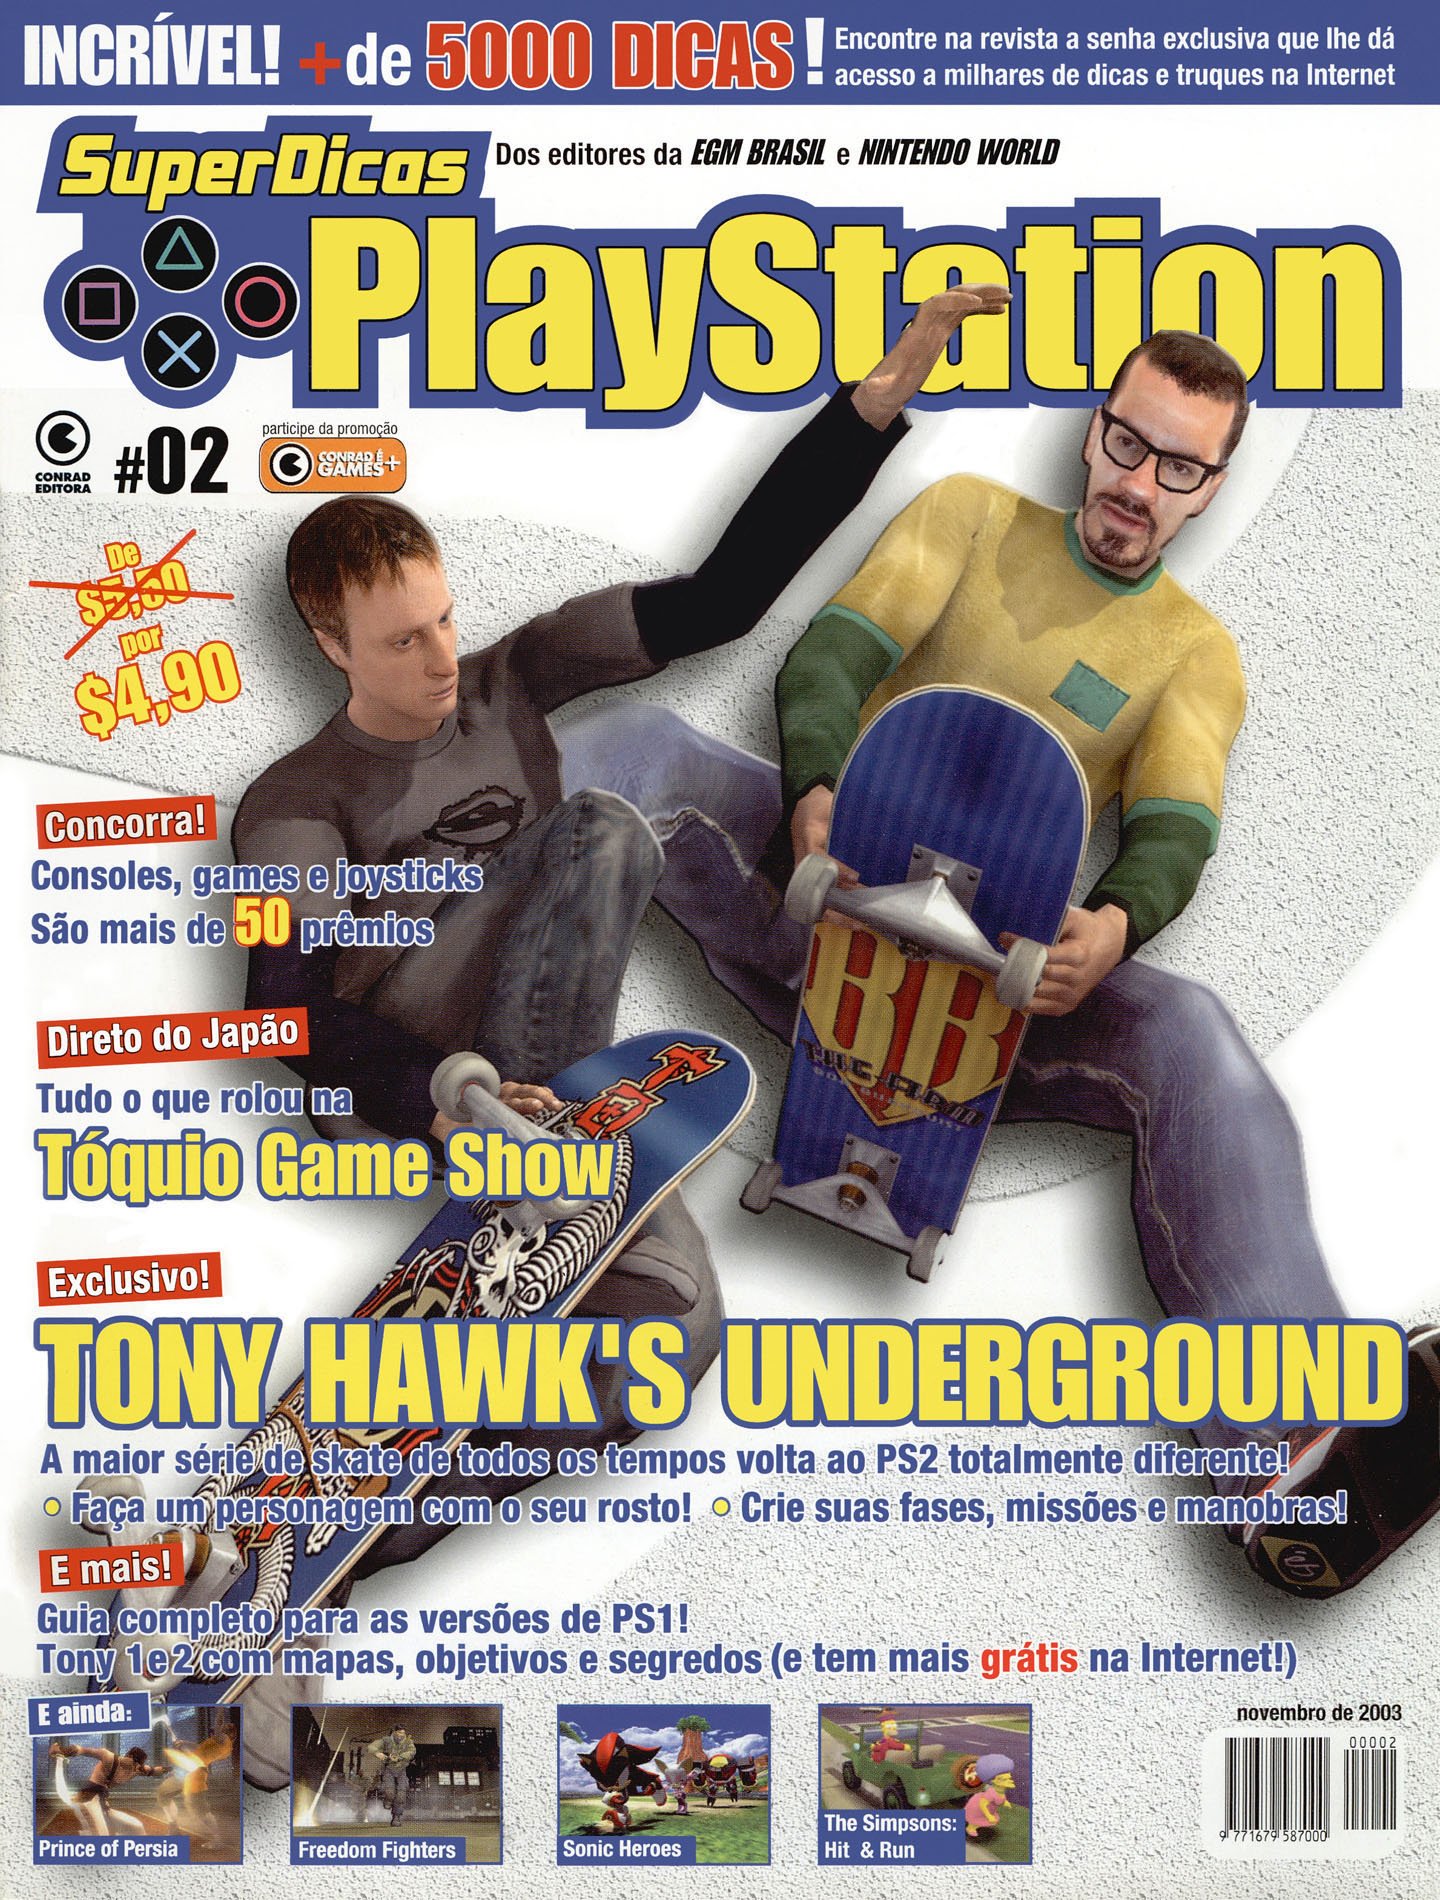 28G Revista Playstation Dicas e truques 118 / Fifa 09 detonado